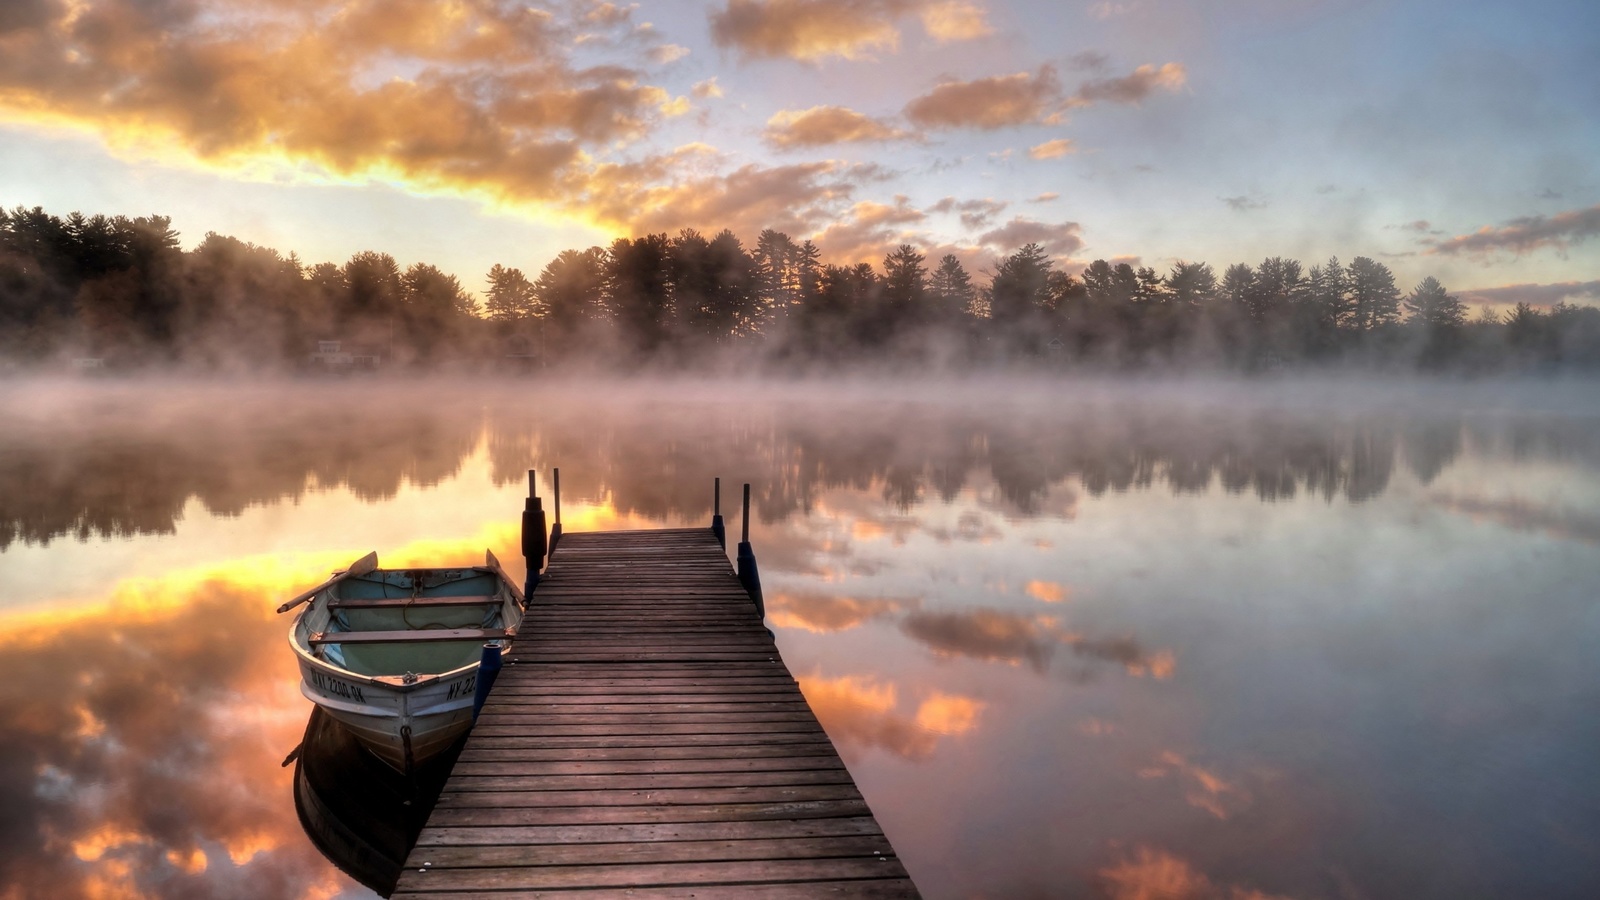 лодка, мост, причал, туман, озеро, утро, причал, отражение, восход